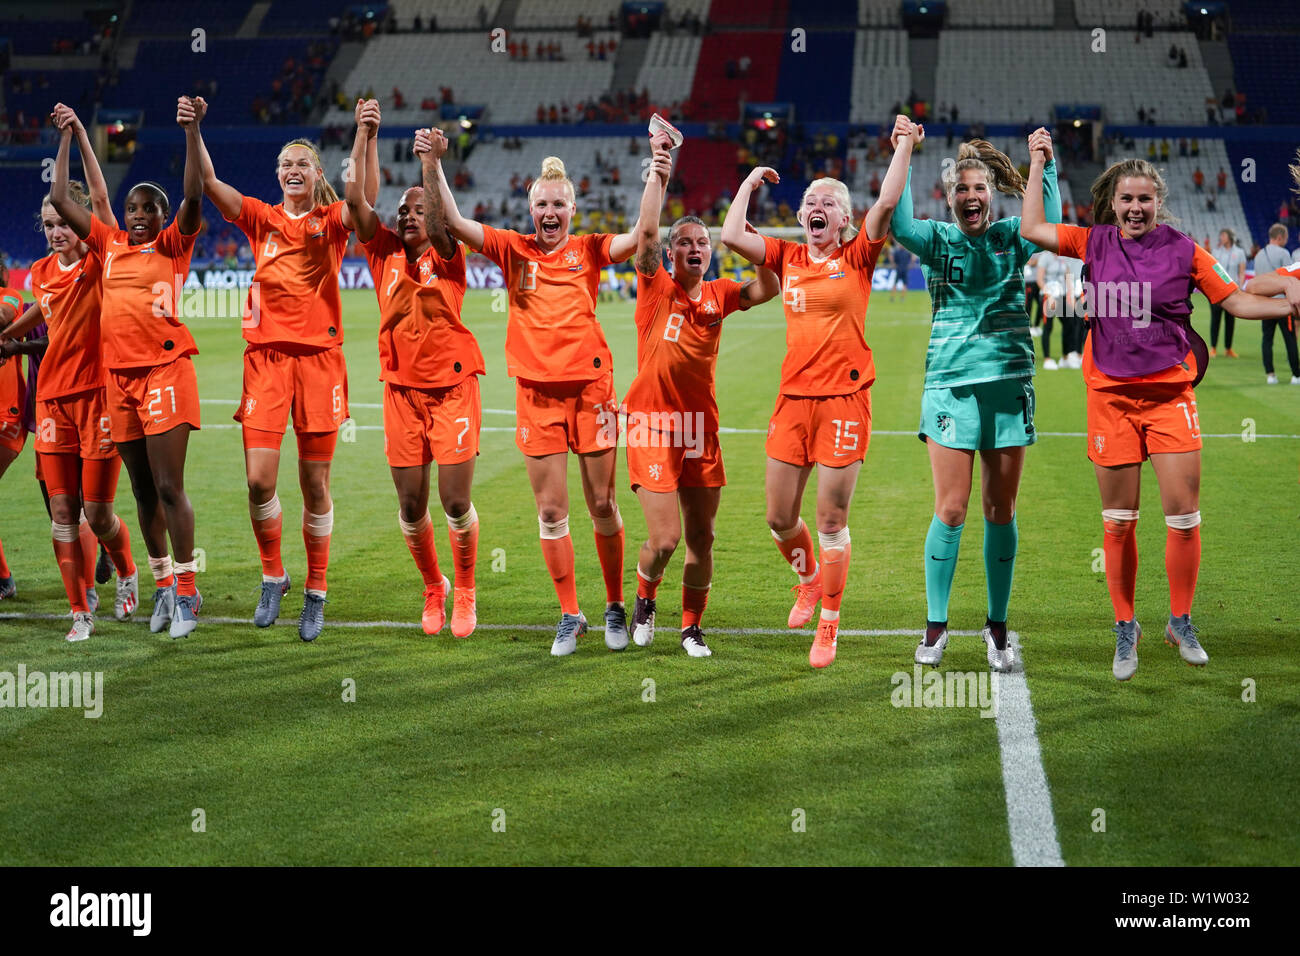 3 de julio 2019 Lyon, Francia Copa Mundial Femenina de la FIFA Francia 2019 Lineth Beerensteyn de los países Bajos, Stefanie van der Gragt de los Bajos, van de